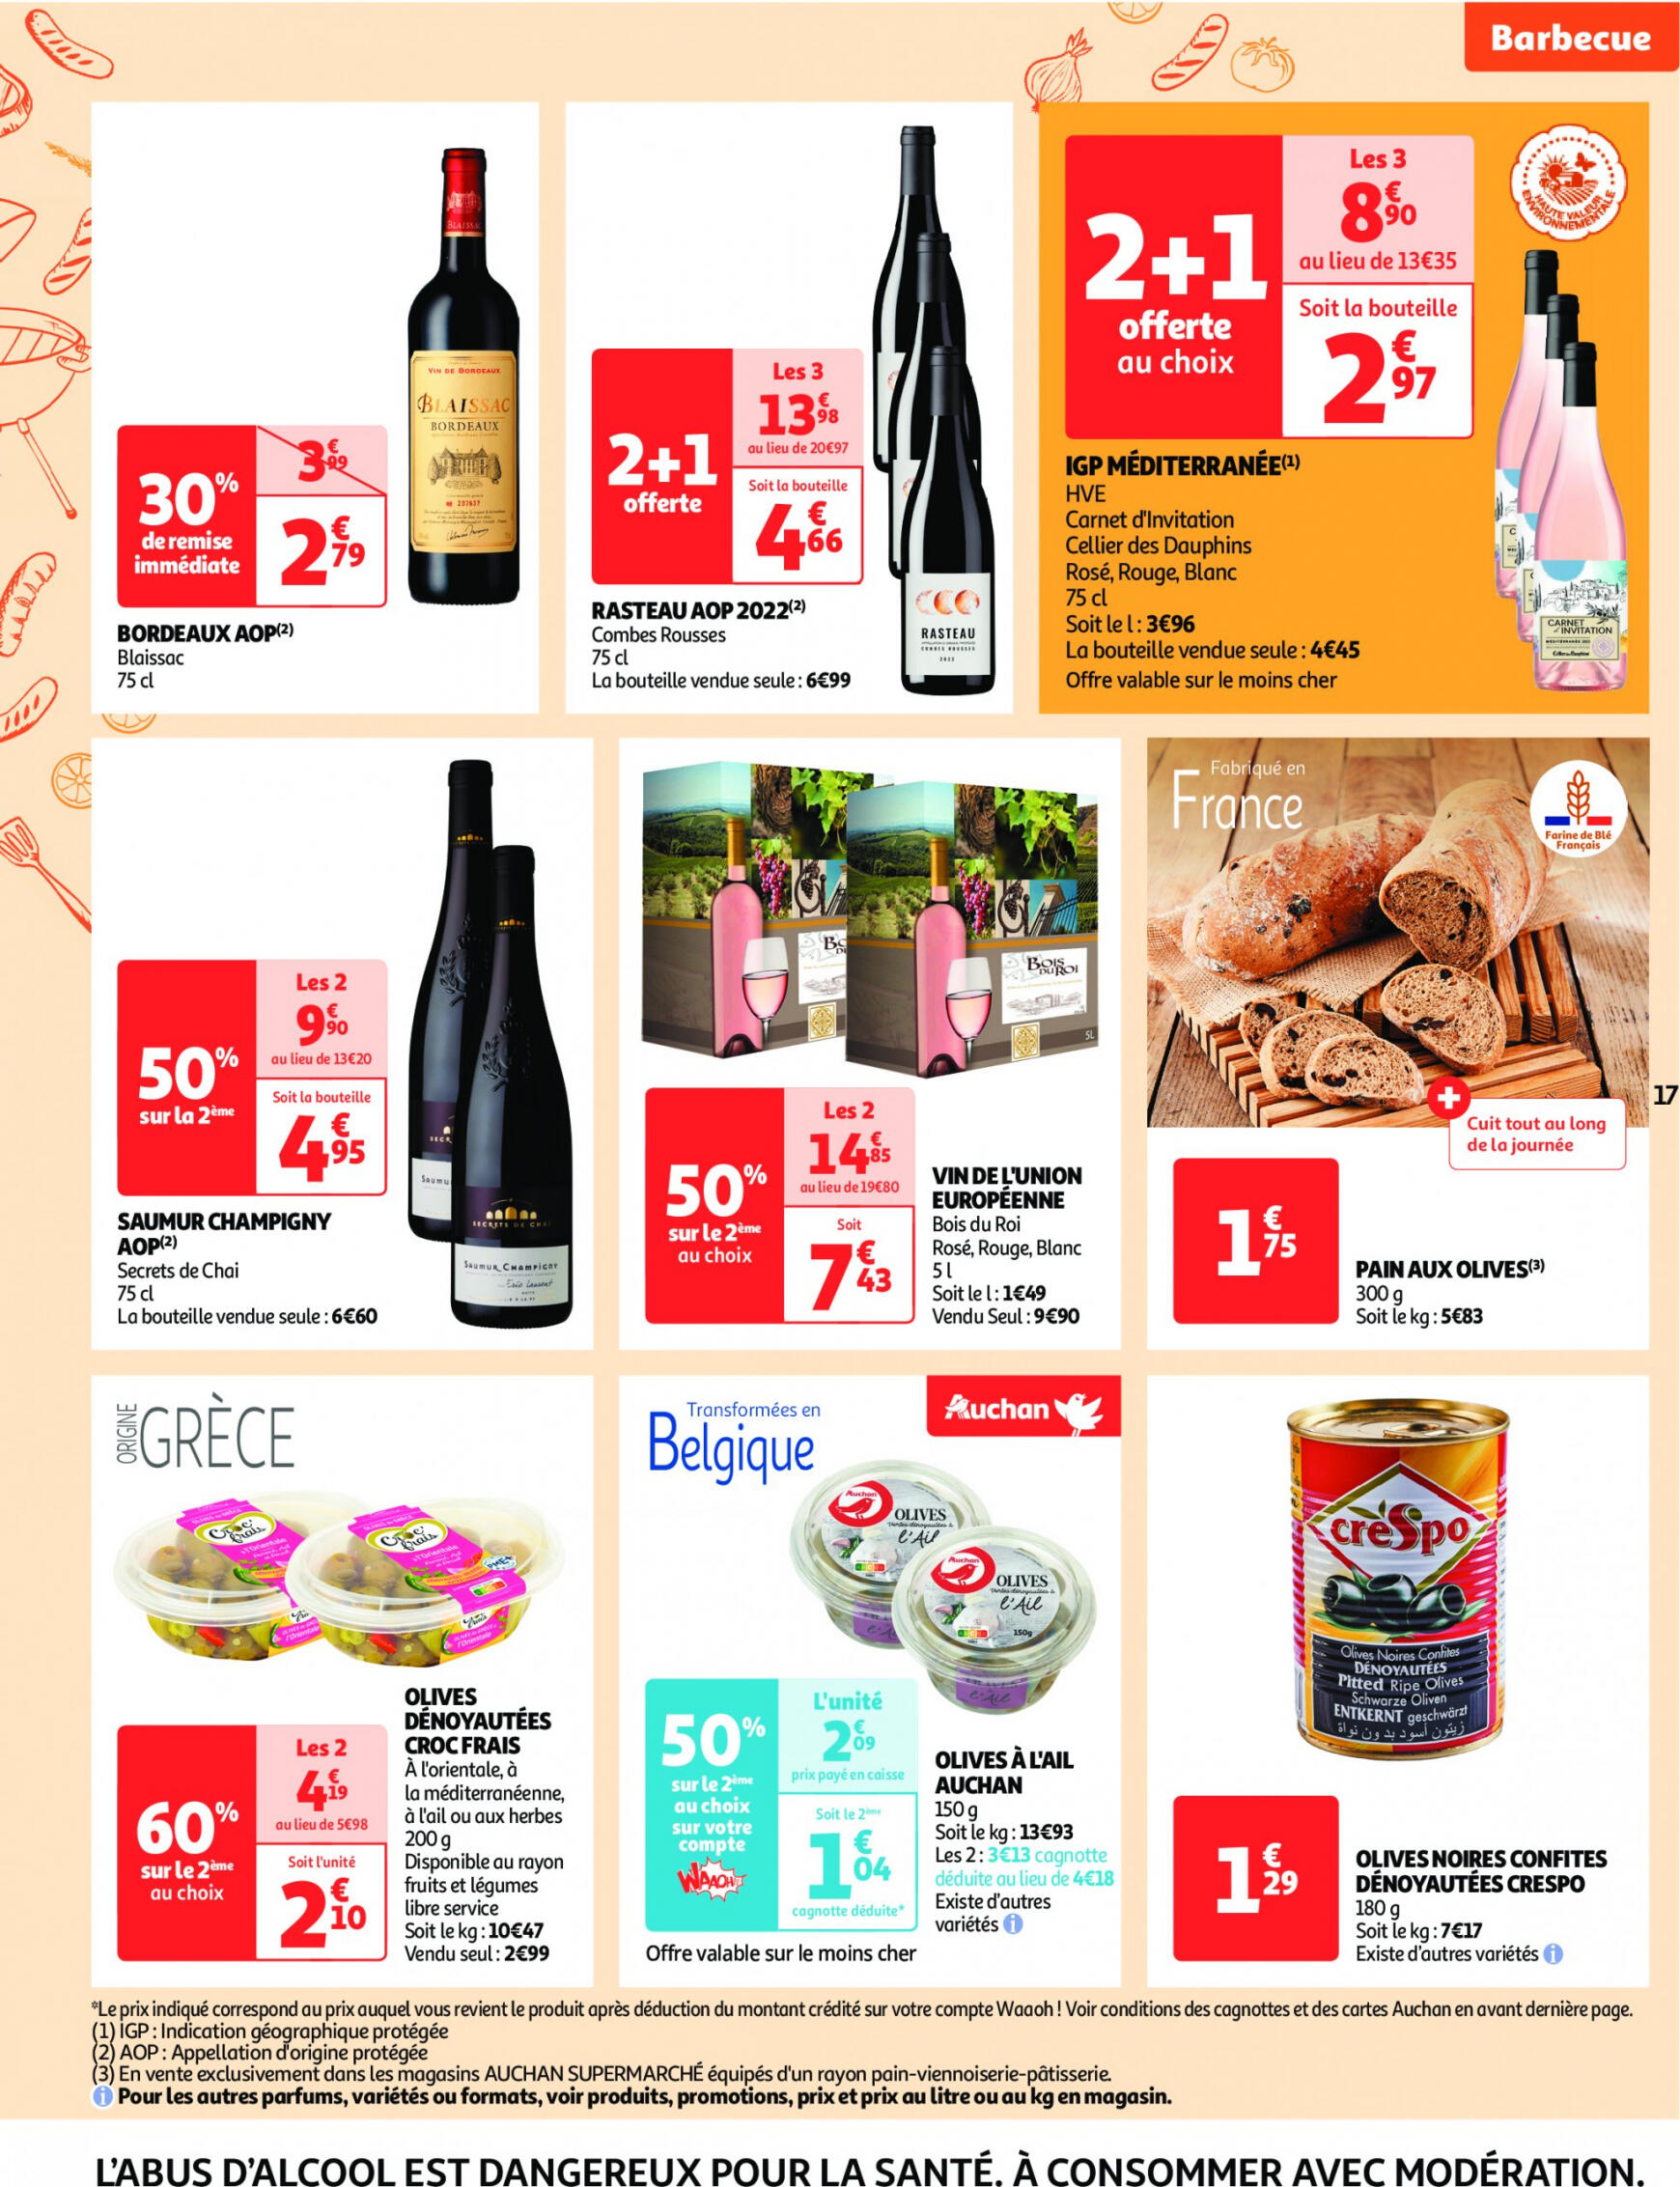 auchan - Auchan supermarché - Faites le plein de bonnes affaires folder huidig 22.05. - 26.05. - page: 17